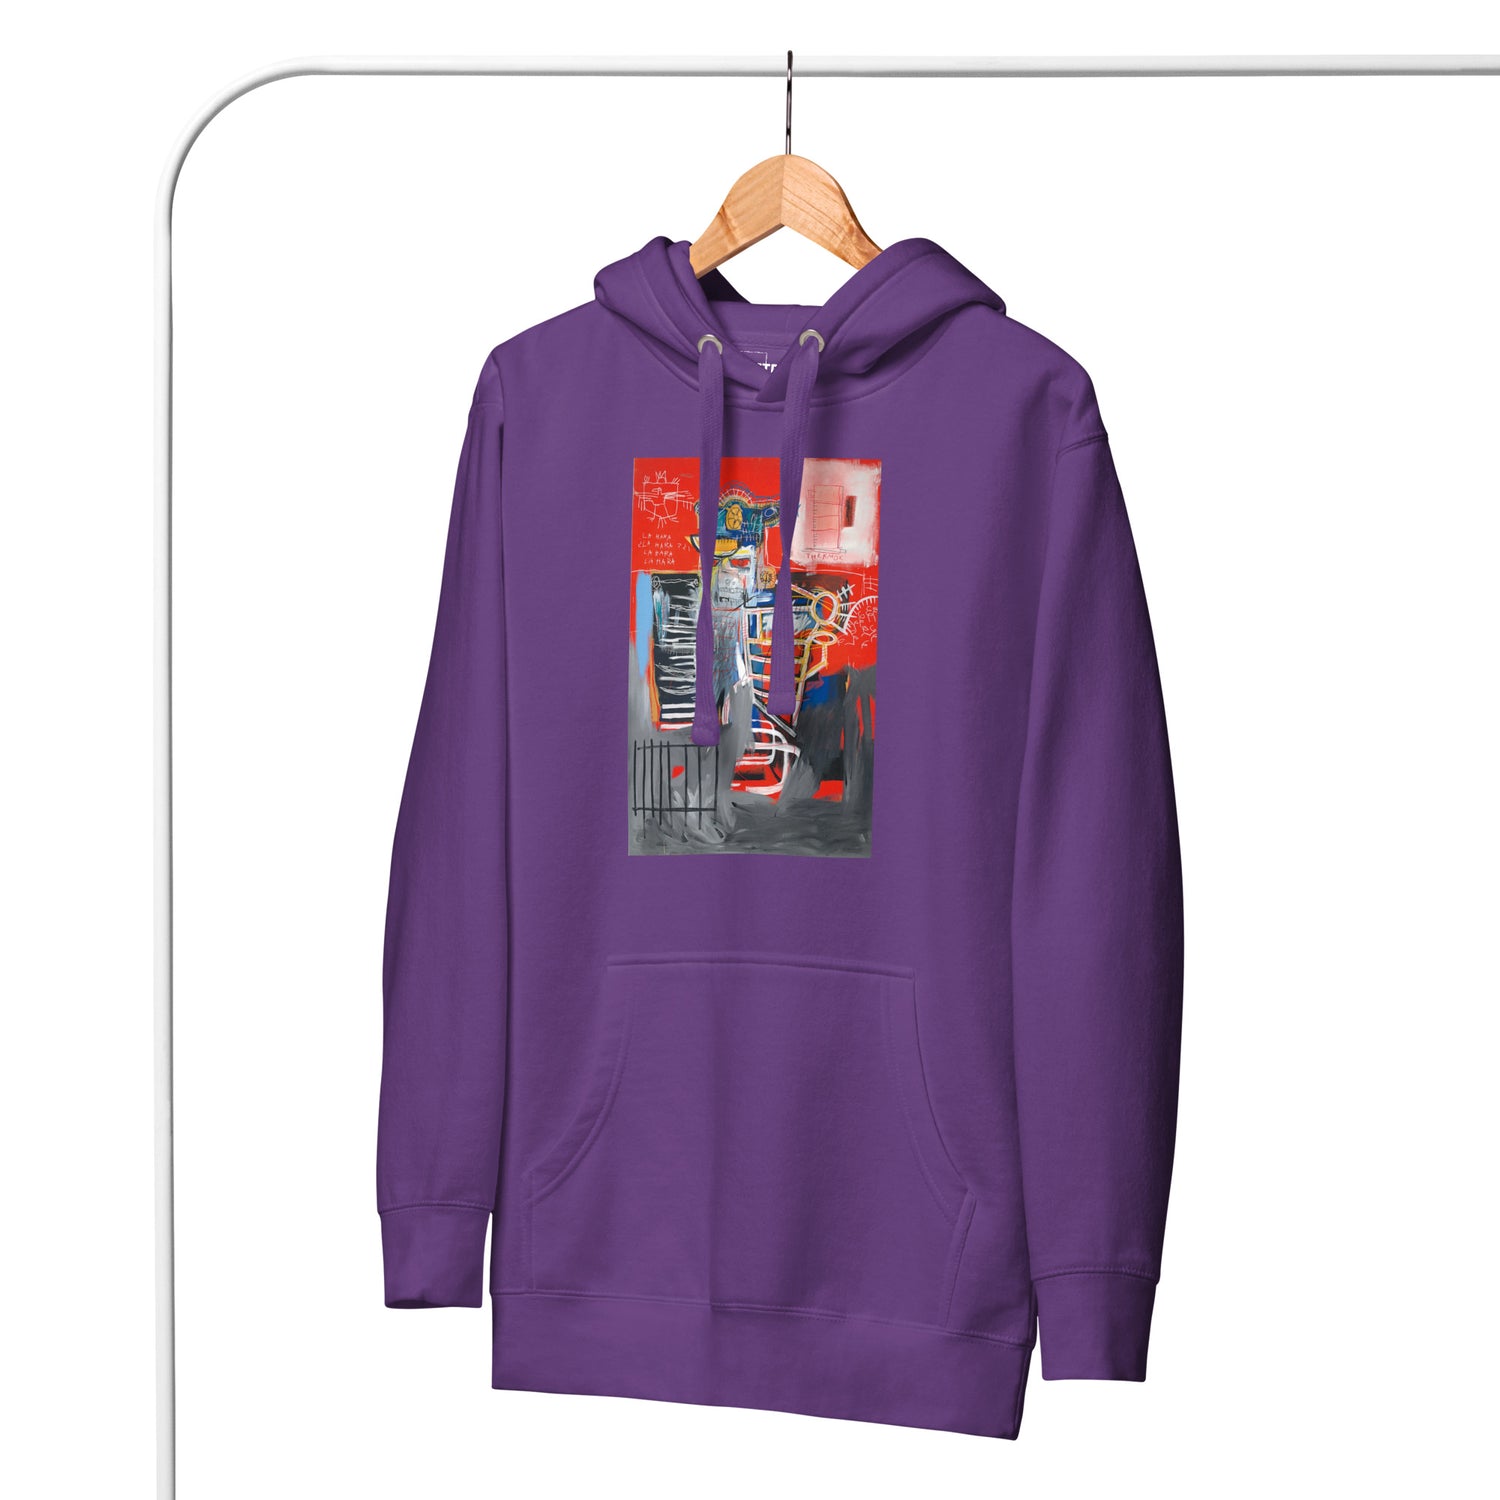 Jean-Michel Basquiat "La Hara" Artwork Printed Premium Streetwear Sweatshirt Hoodie Purple